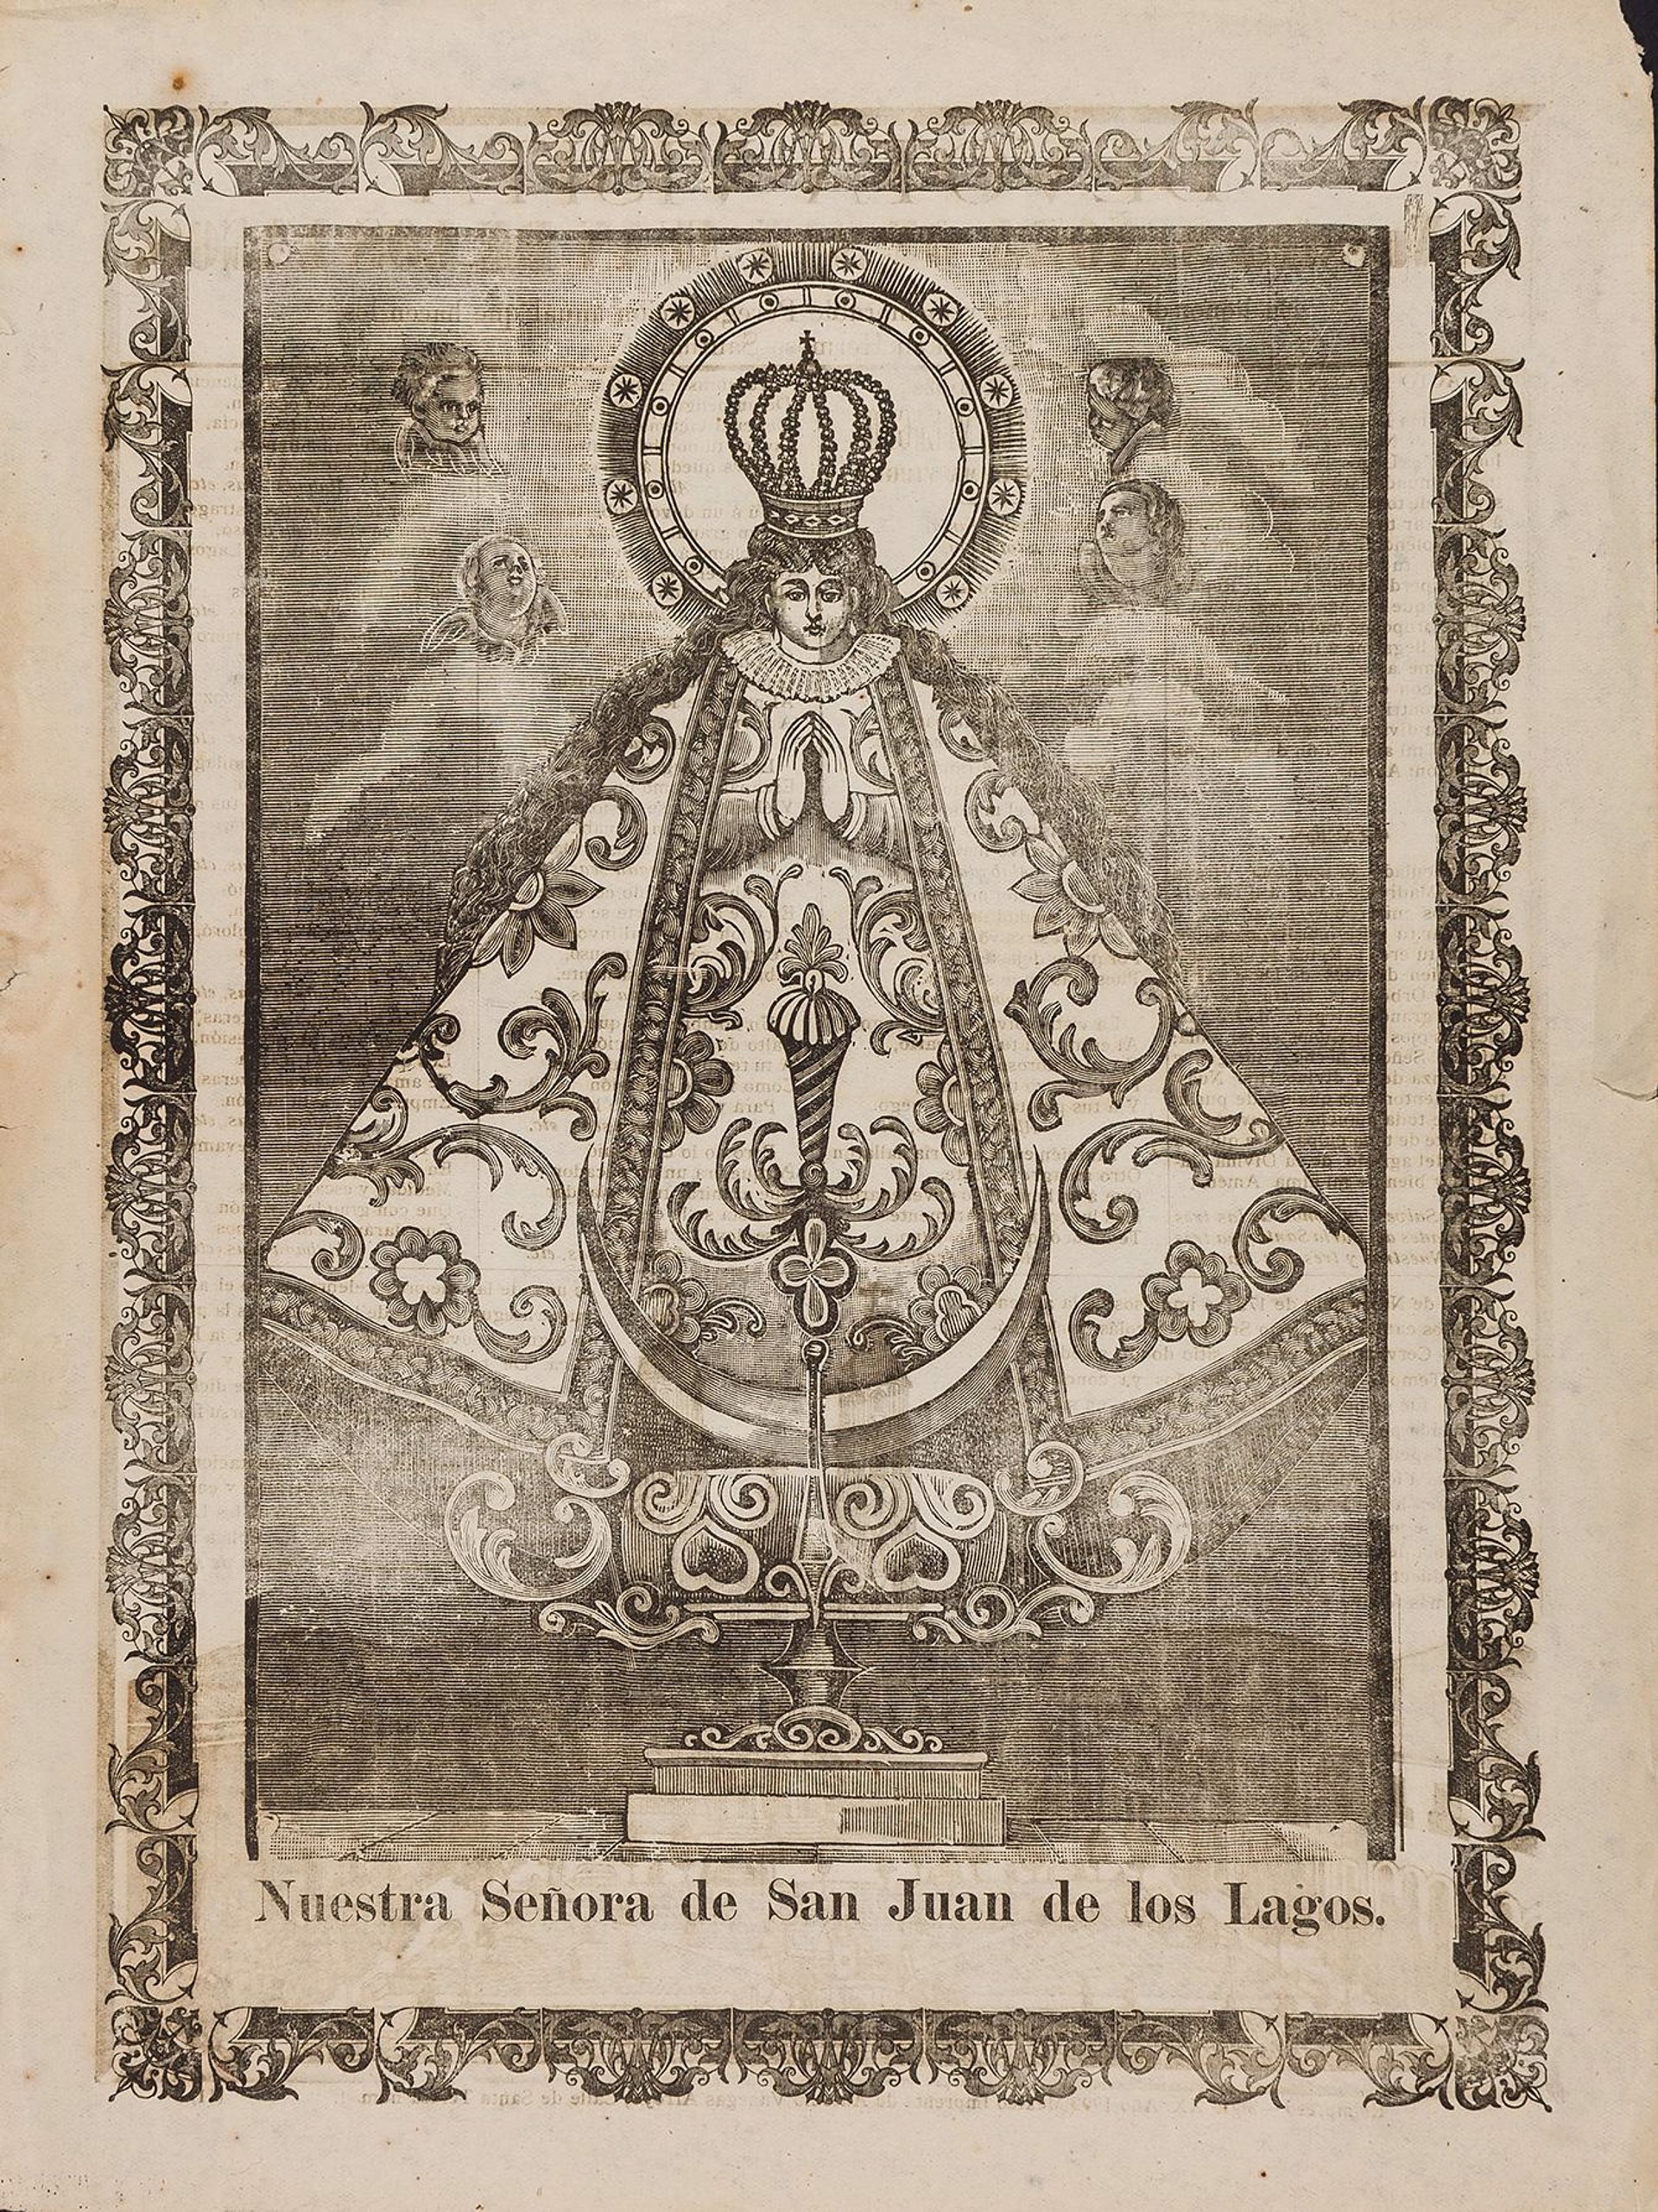 Nuestra Señora De San Juan De Los Lagos by José Guadalupe Posada